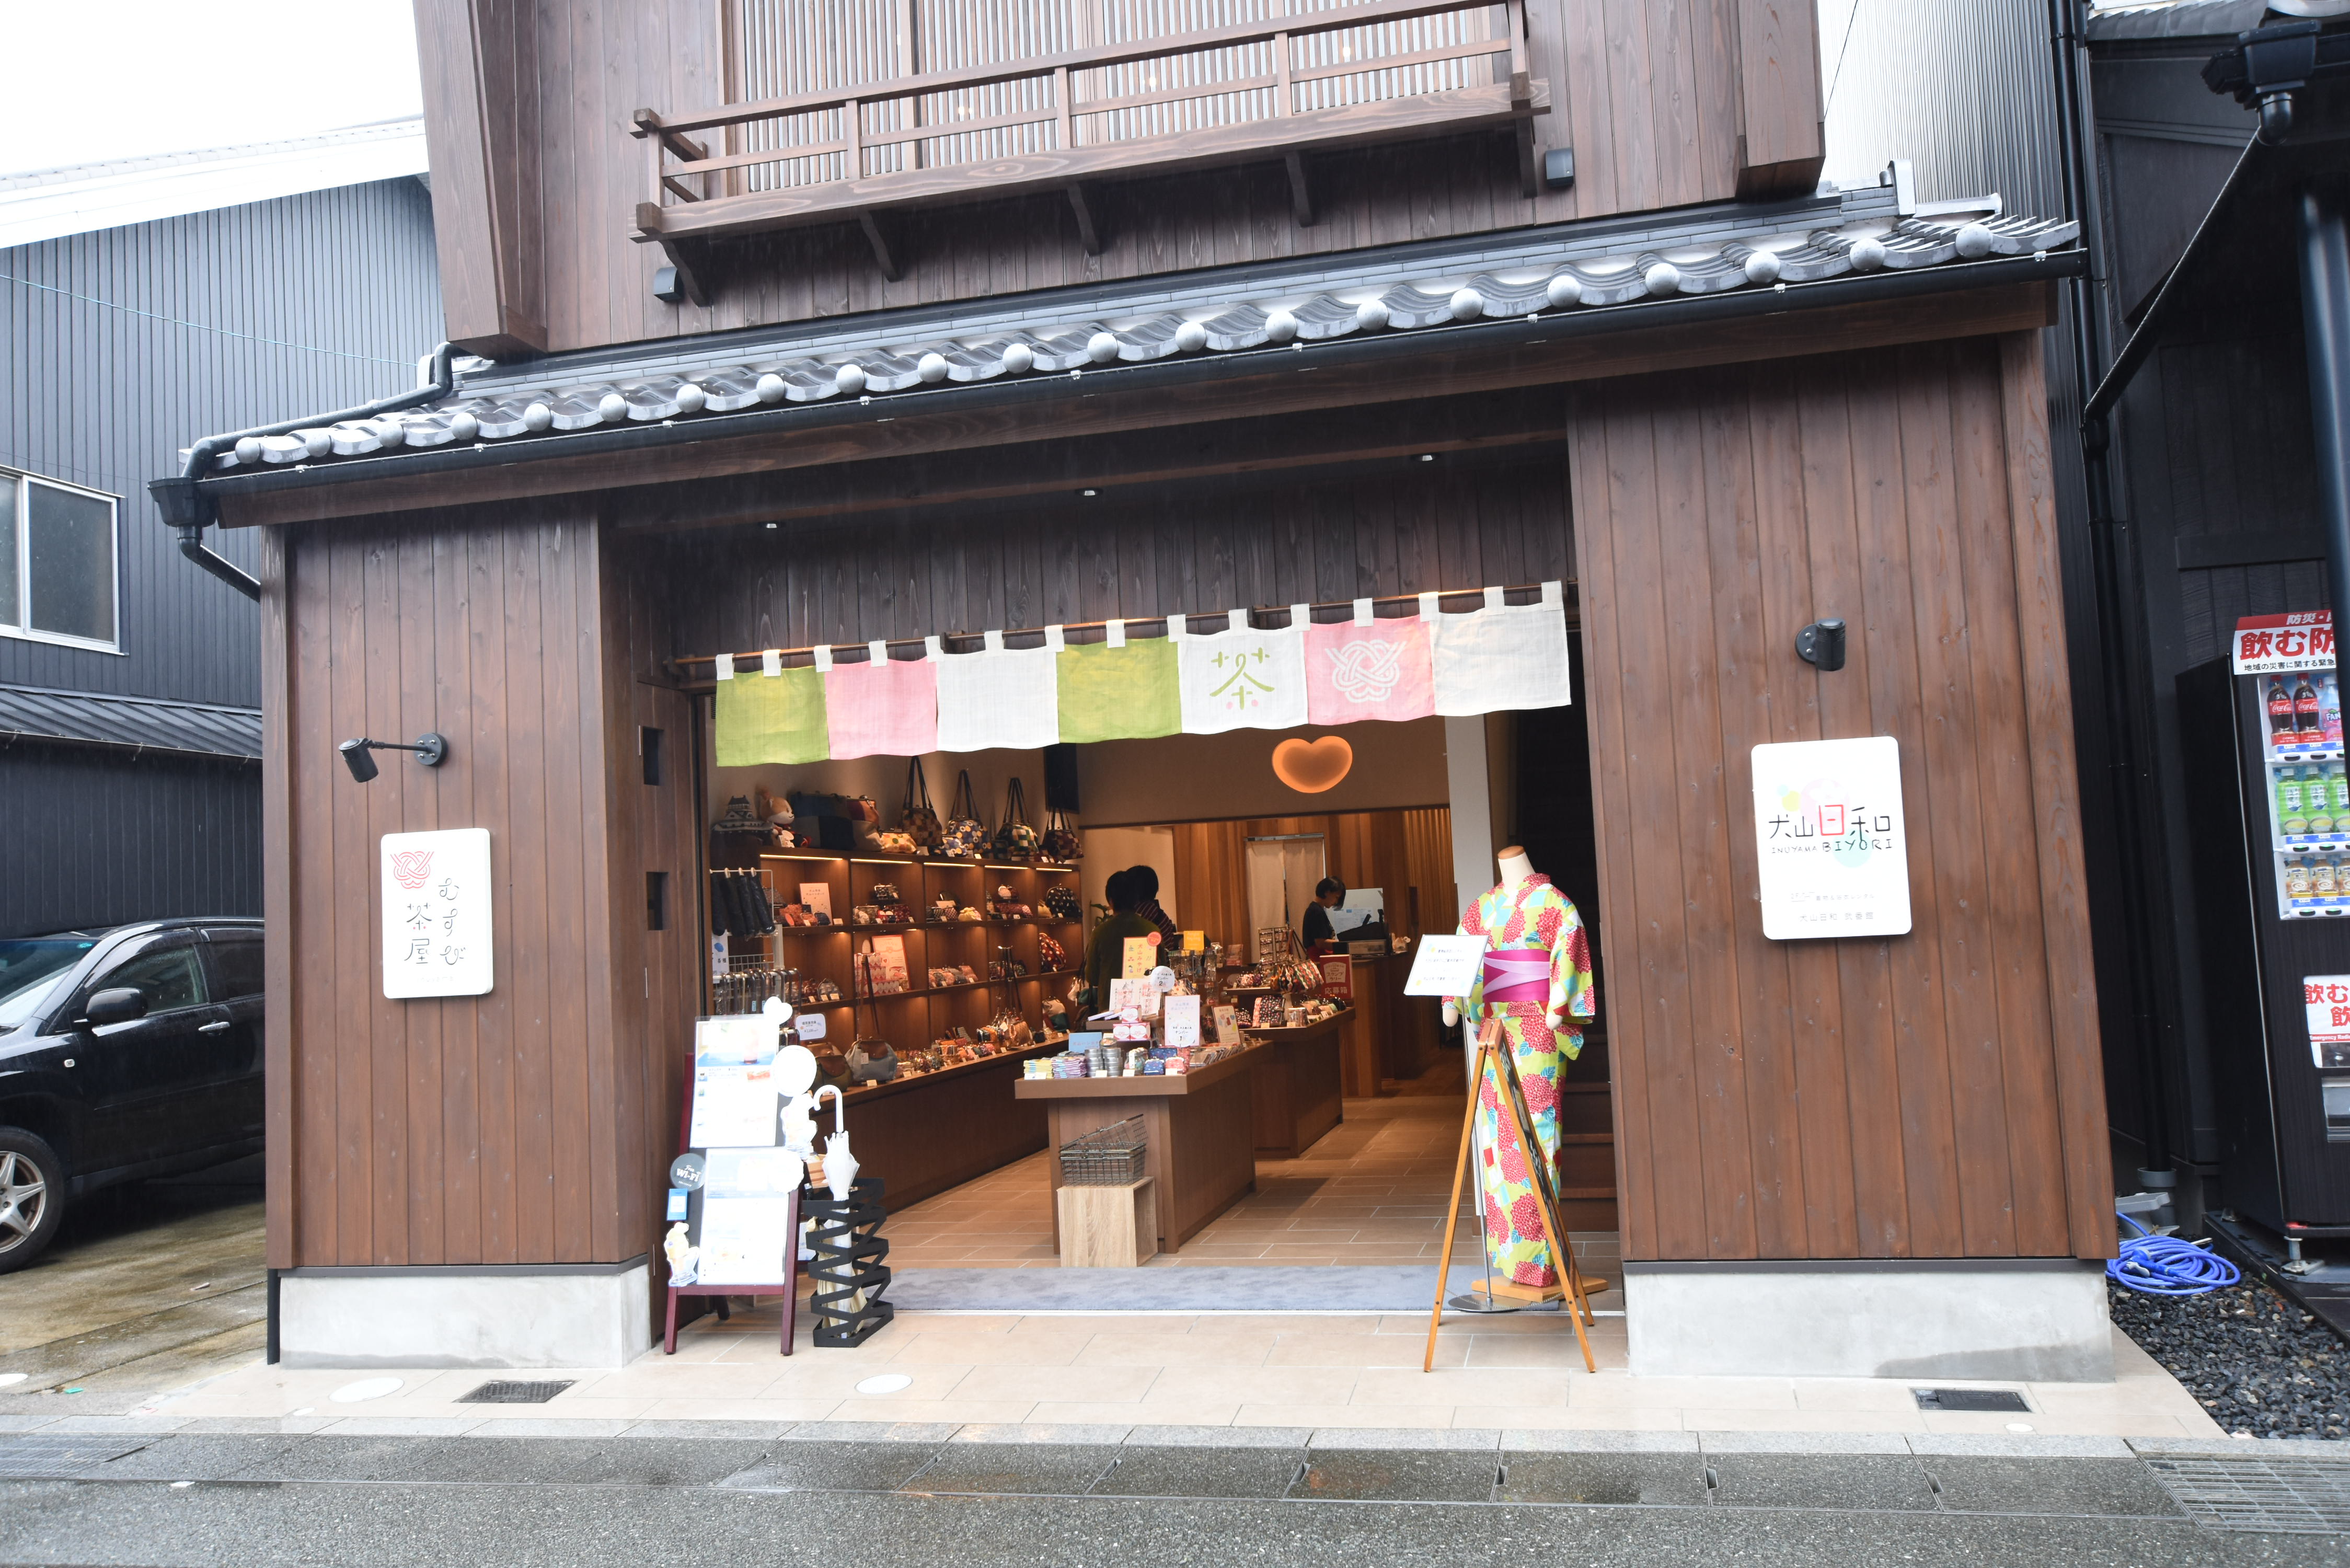 犬山観光 城下町で食べ歩きデートしてきた おすすめコースは ファミトラ 家族 夫婦旅行におすすめ観光スポット紹介ブログ